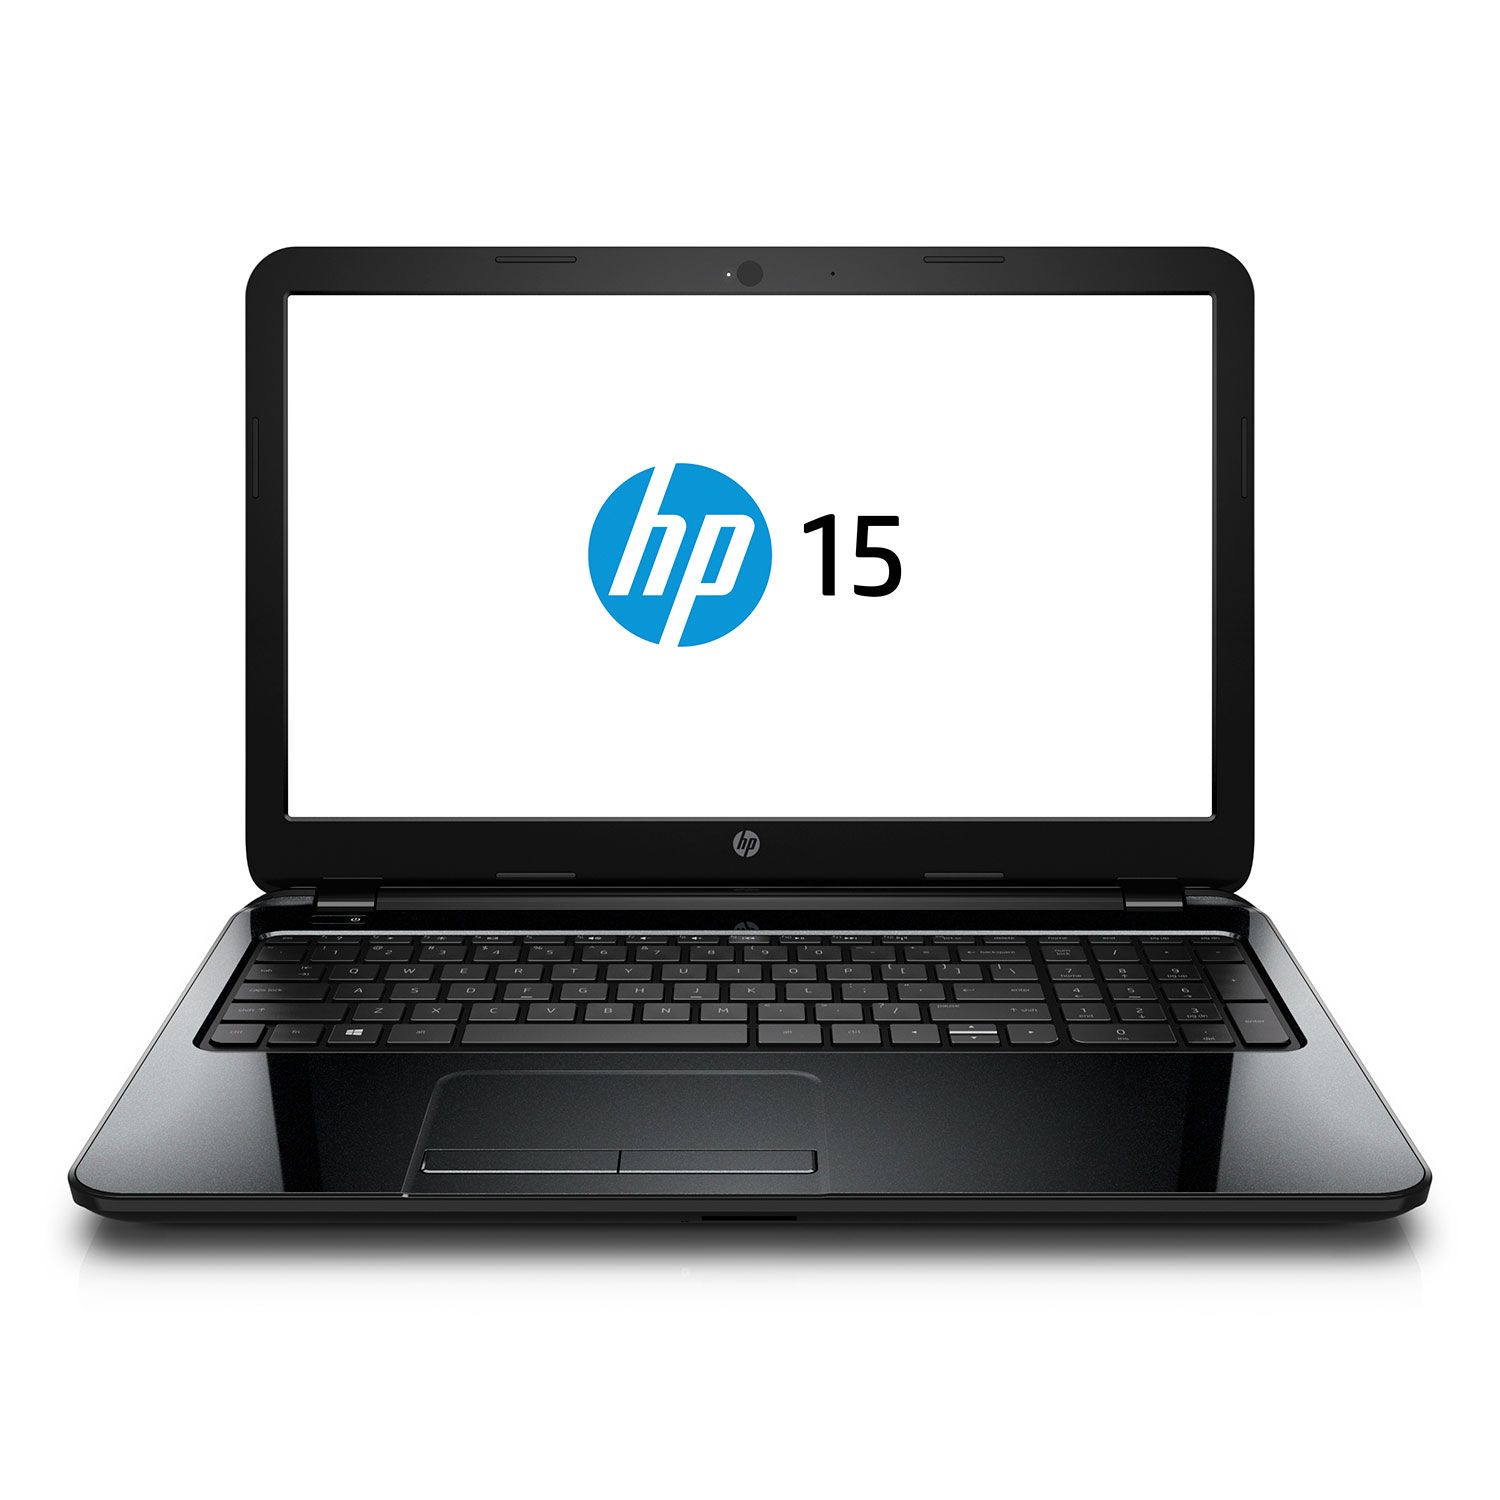 Dòng laptop giá rẻ 2014 HP 15-g070nr  15.6-inch hấp dẫn người dùng bởi thời lượng pin cao, hiệu suất làm việc ổn định. 